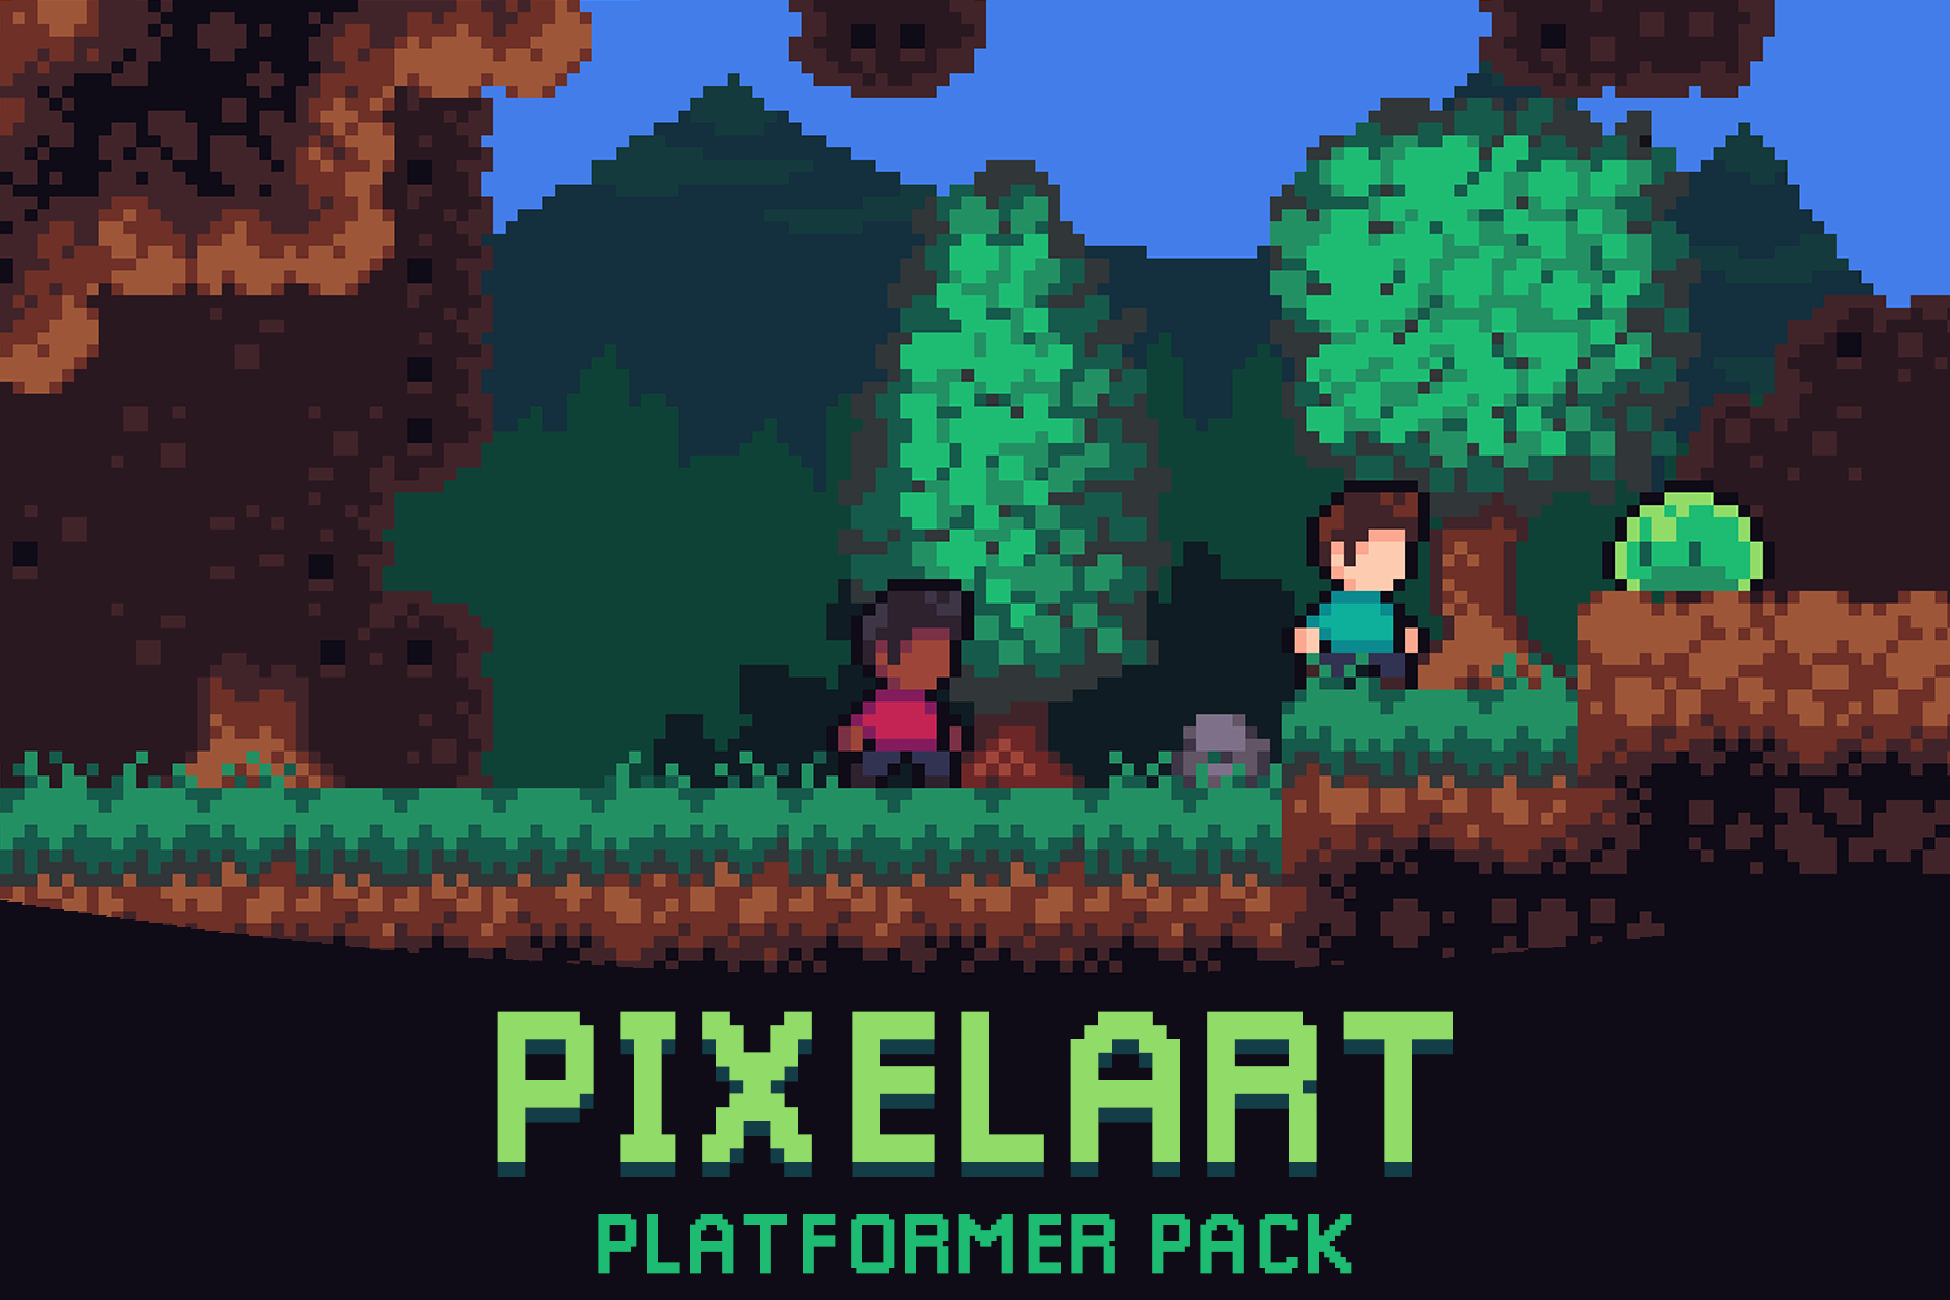 Platformer Tileset - Pixelart Grasslands